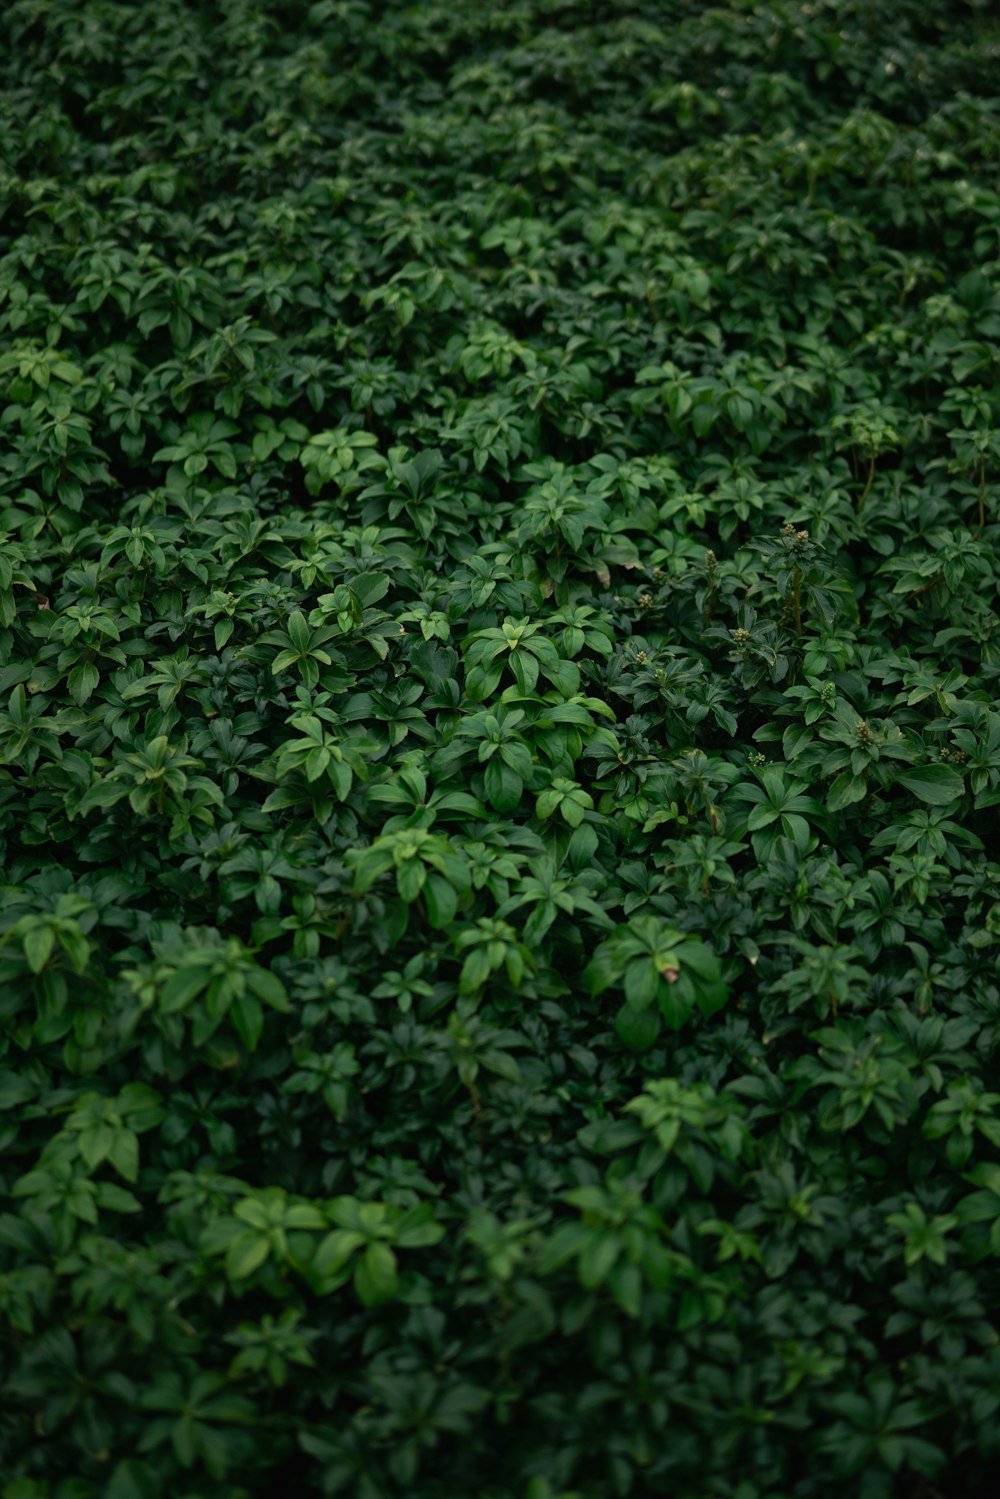 grüne Blätter auf braunem Boden